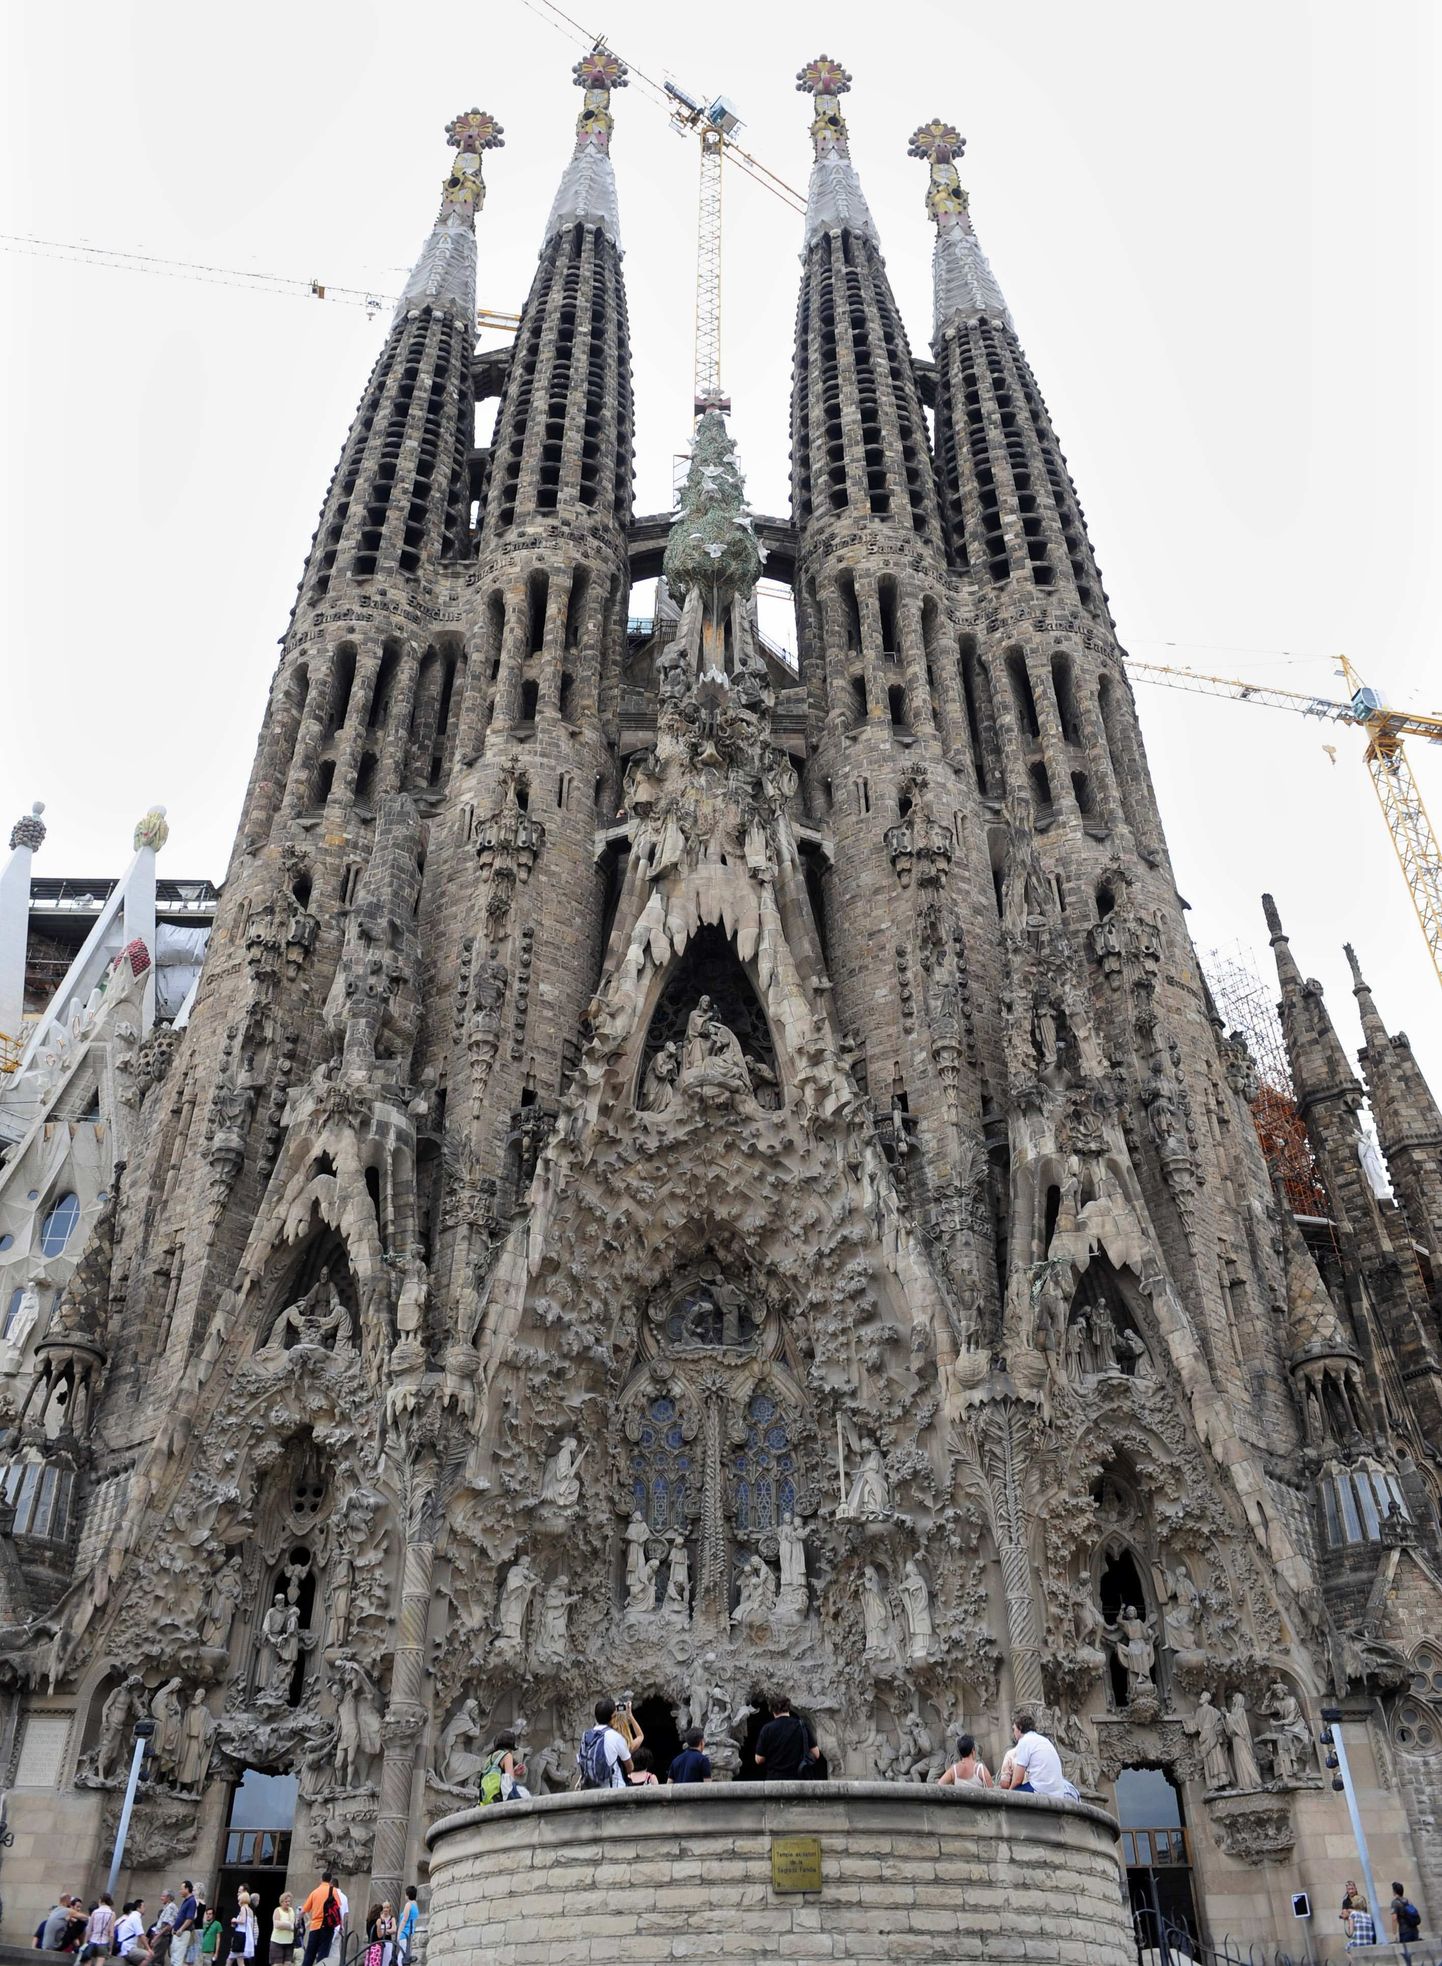 Maailma Mälestusmärkide Fondi uues nimekirjas on ka see Barcelonas asuv kirik.